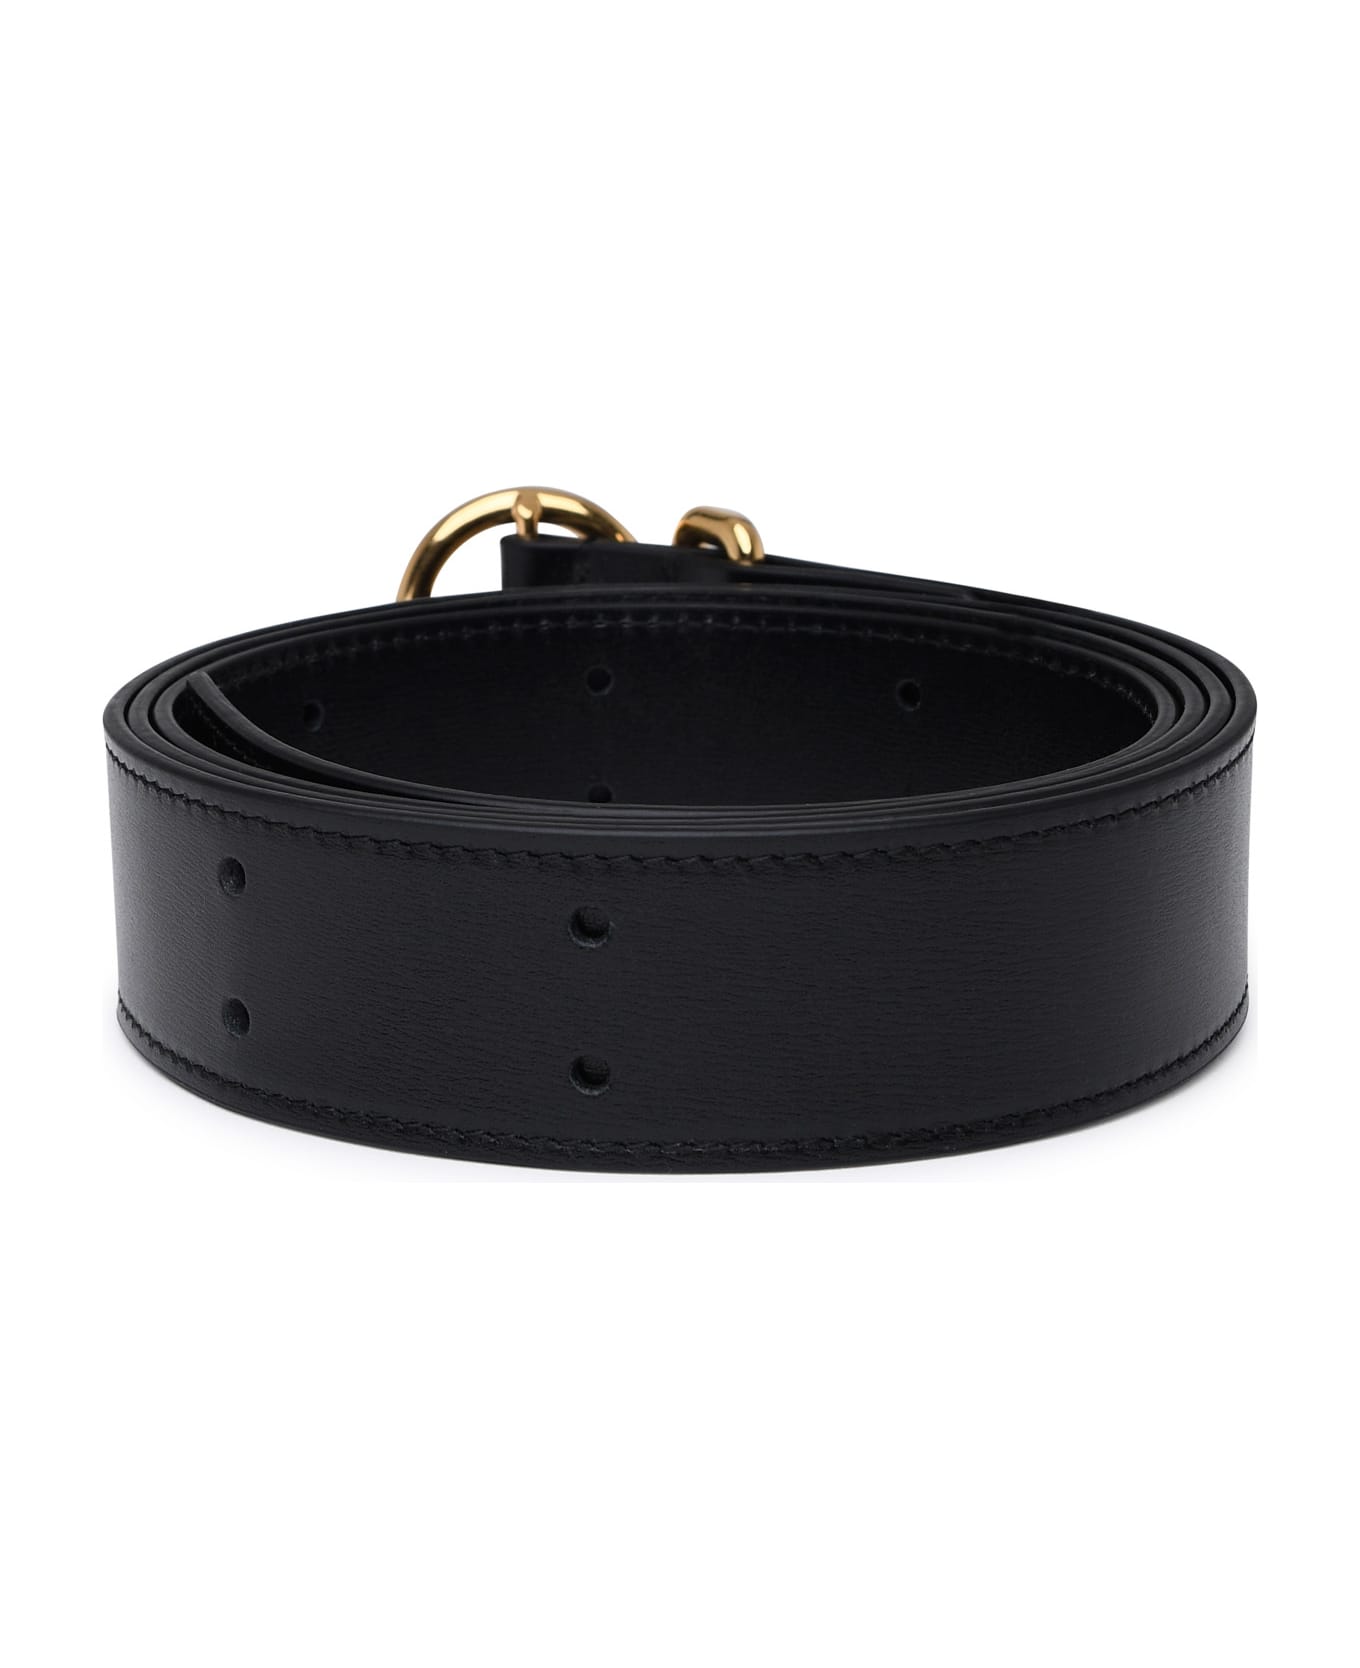 Jil Sander Black Leather Belt - Black ベルト